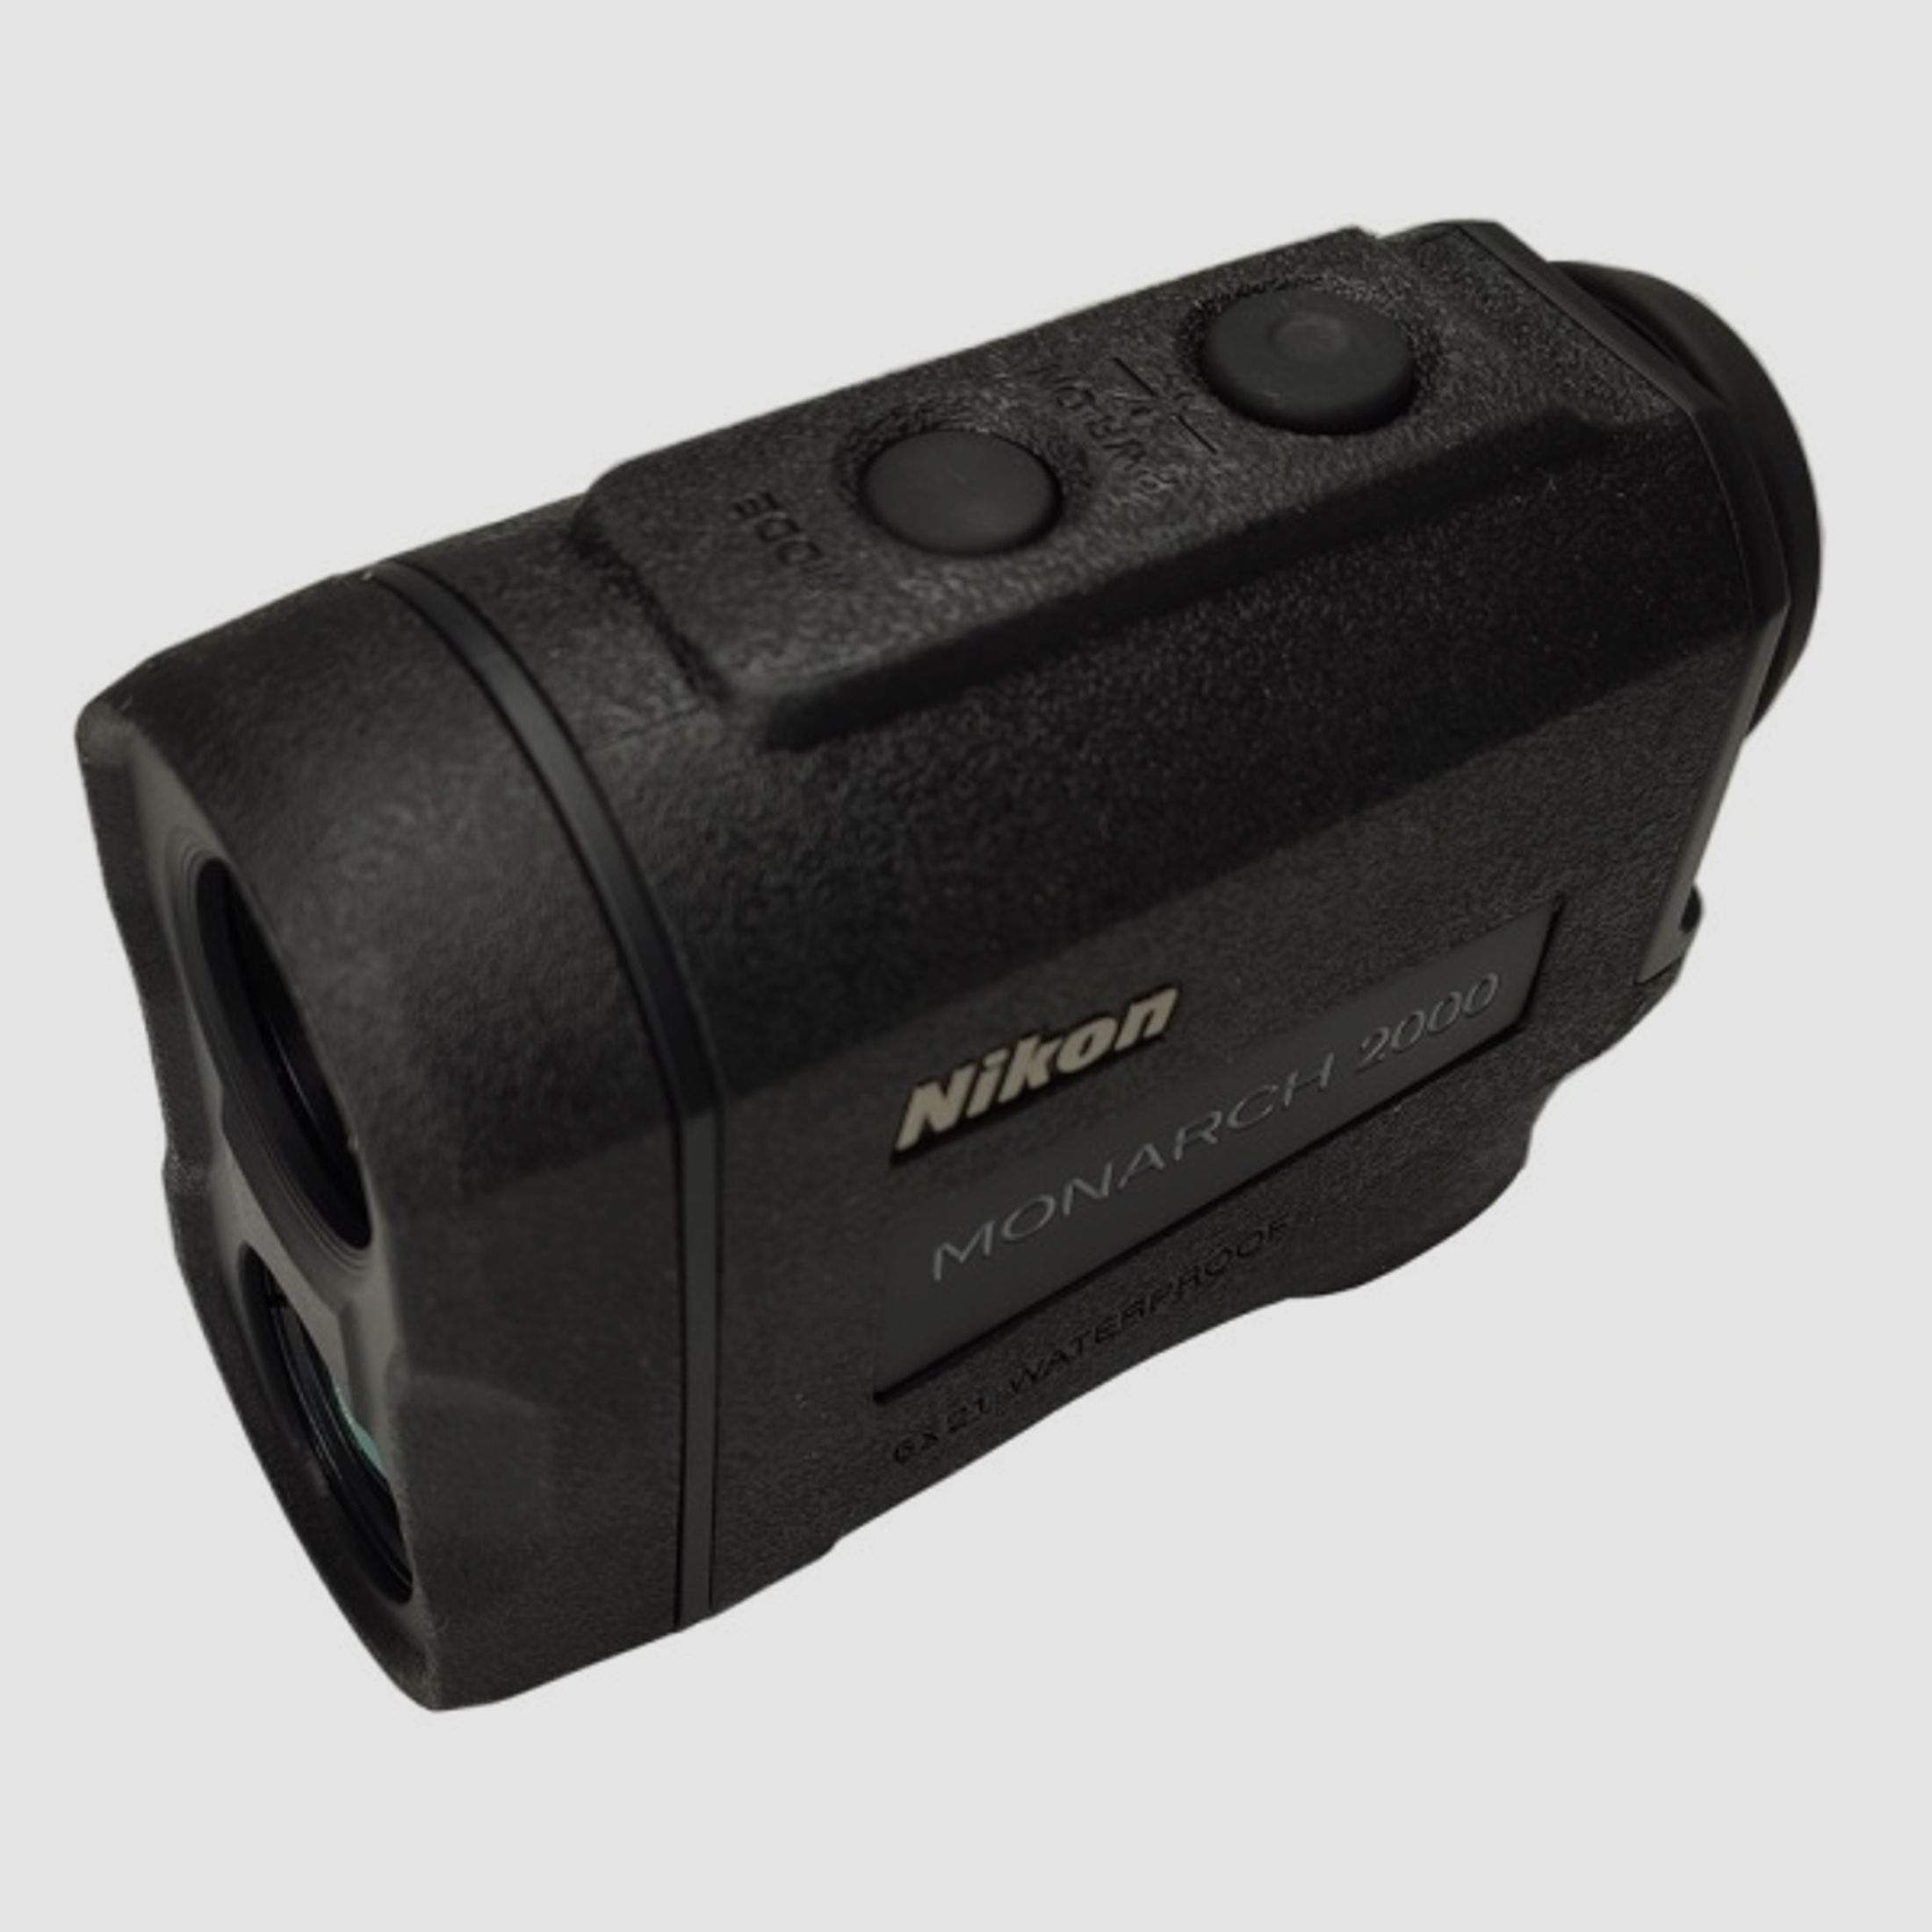 Entfernungsmesser Nikon Monarch 2000